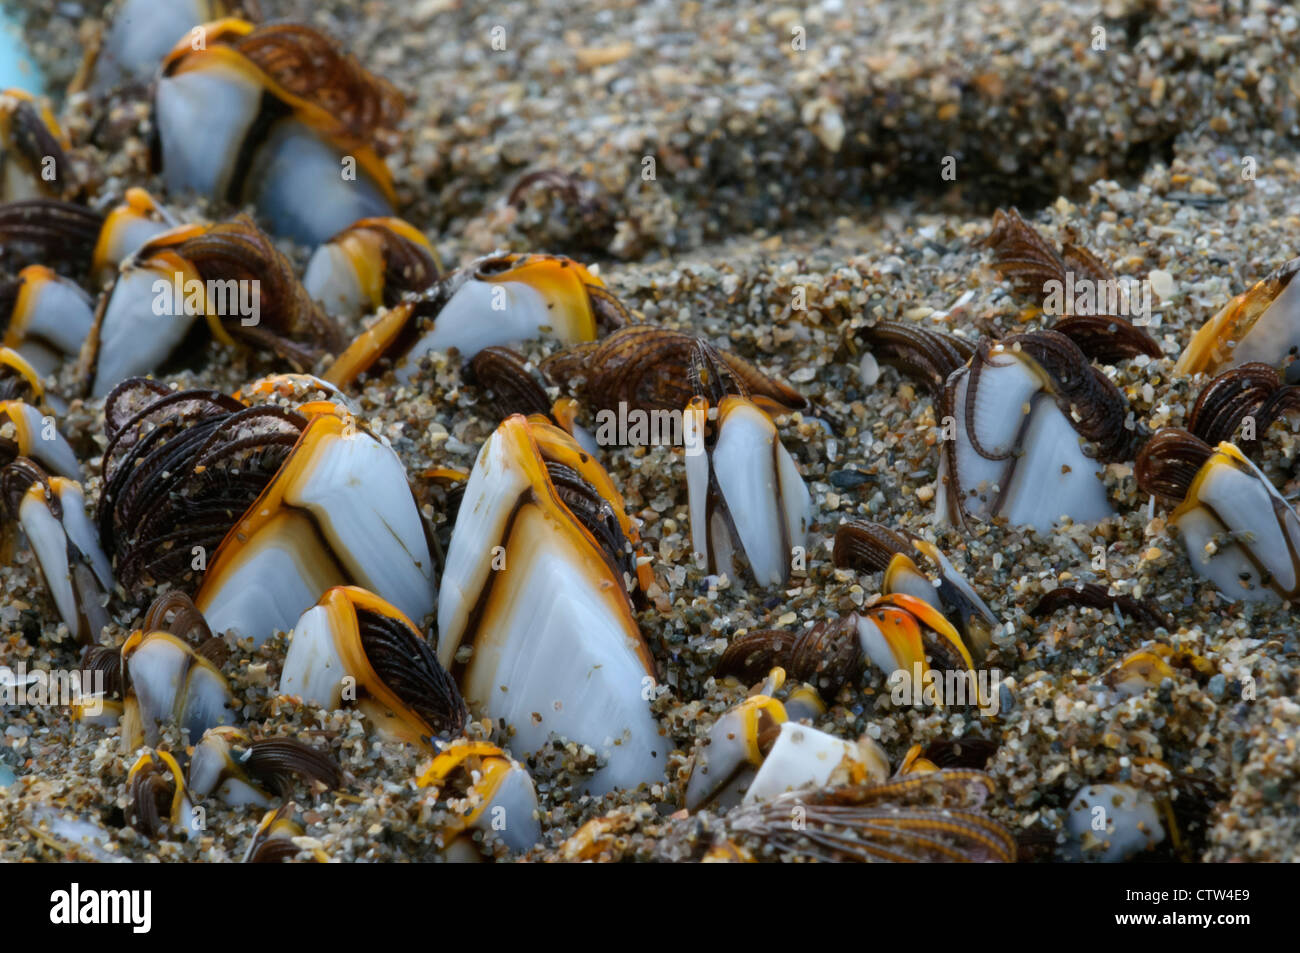 Goose cirripedi (Lepas antifera) trovato su driftwood su una spiaggia delle Shetland. Isola di Unst, Isole Shetland. Giugno. Foto Stock